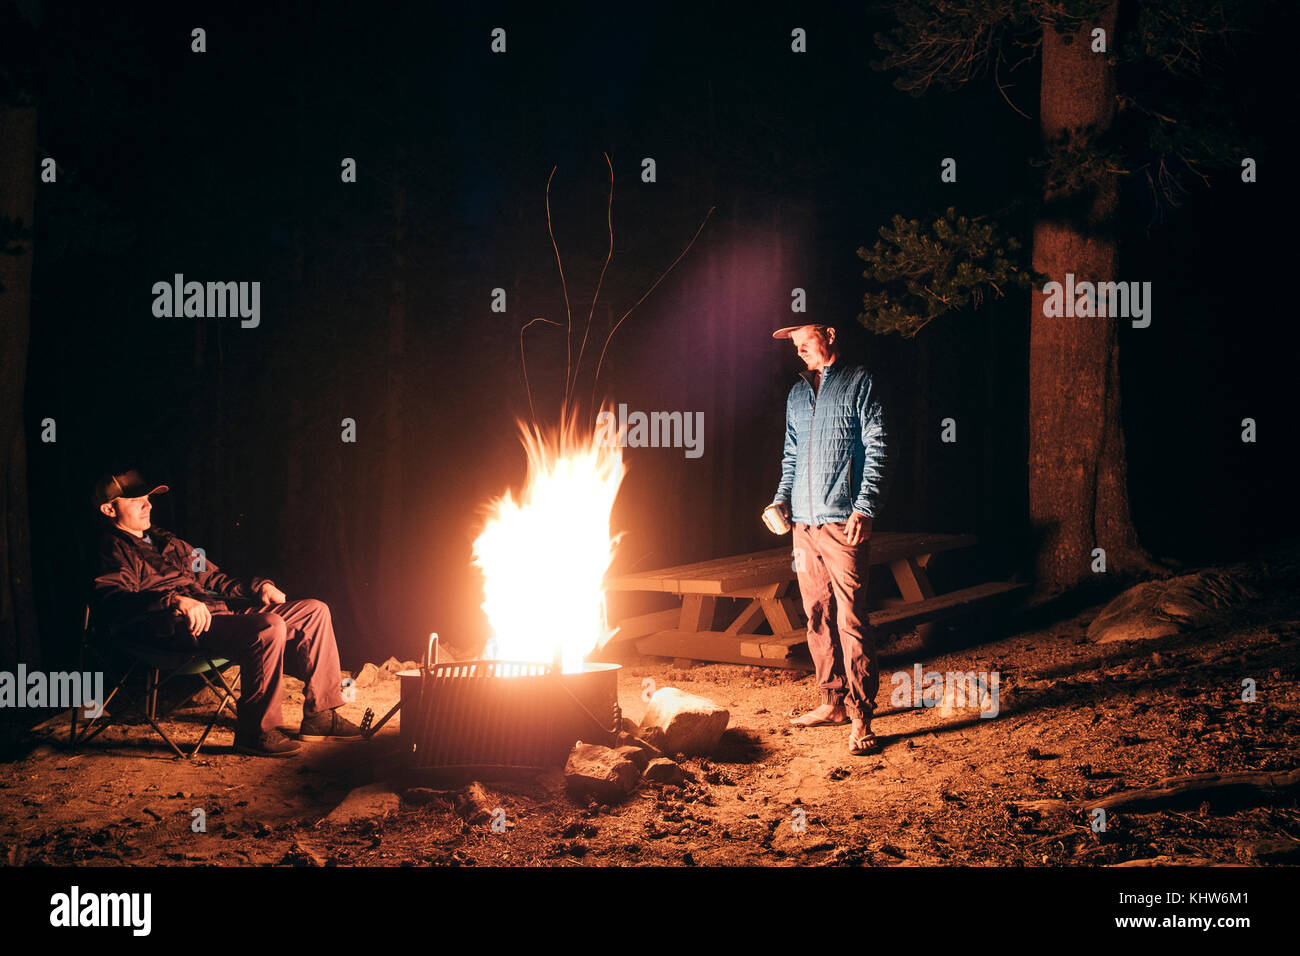 Freunde camping im Wald, Lagerfeuer, Mammoth Lake, Kalifornien, USA, Nordamerika Stockfoto